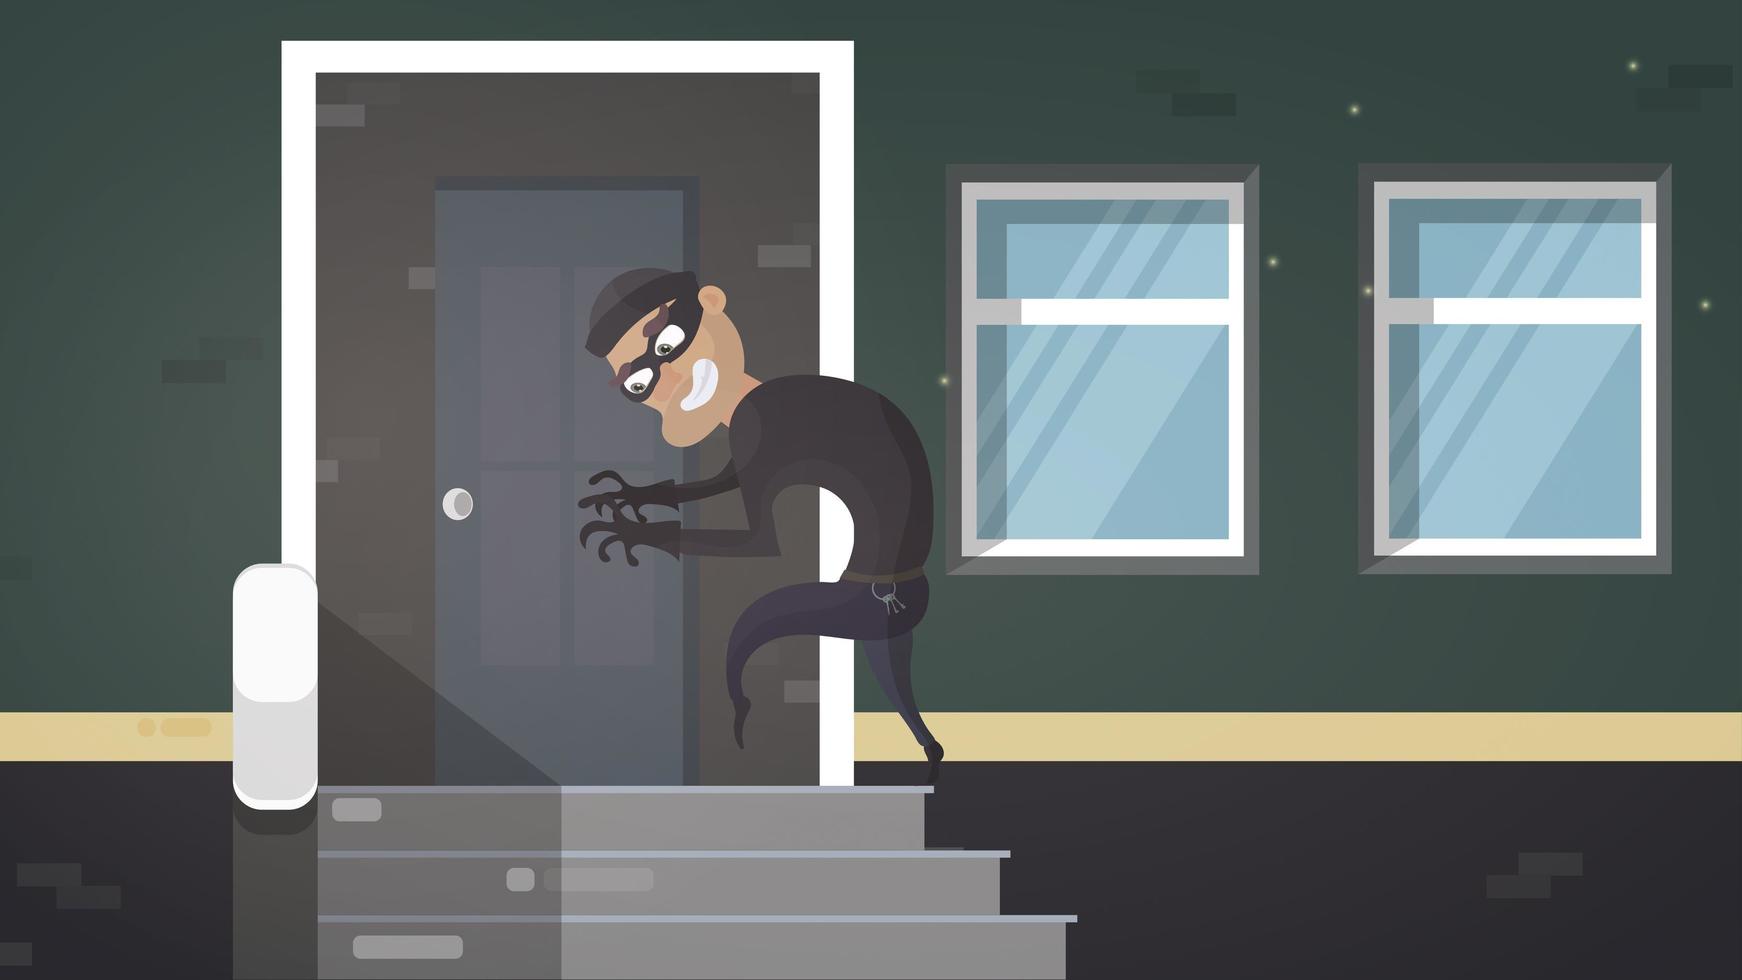 inbrottstjuv i svart mask använder en massa skelettnycklar bryta in i hemmet kriminell tjuv karaktär öppen dörr natt hus interiör platt horisontell vektor